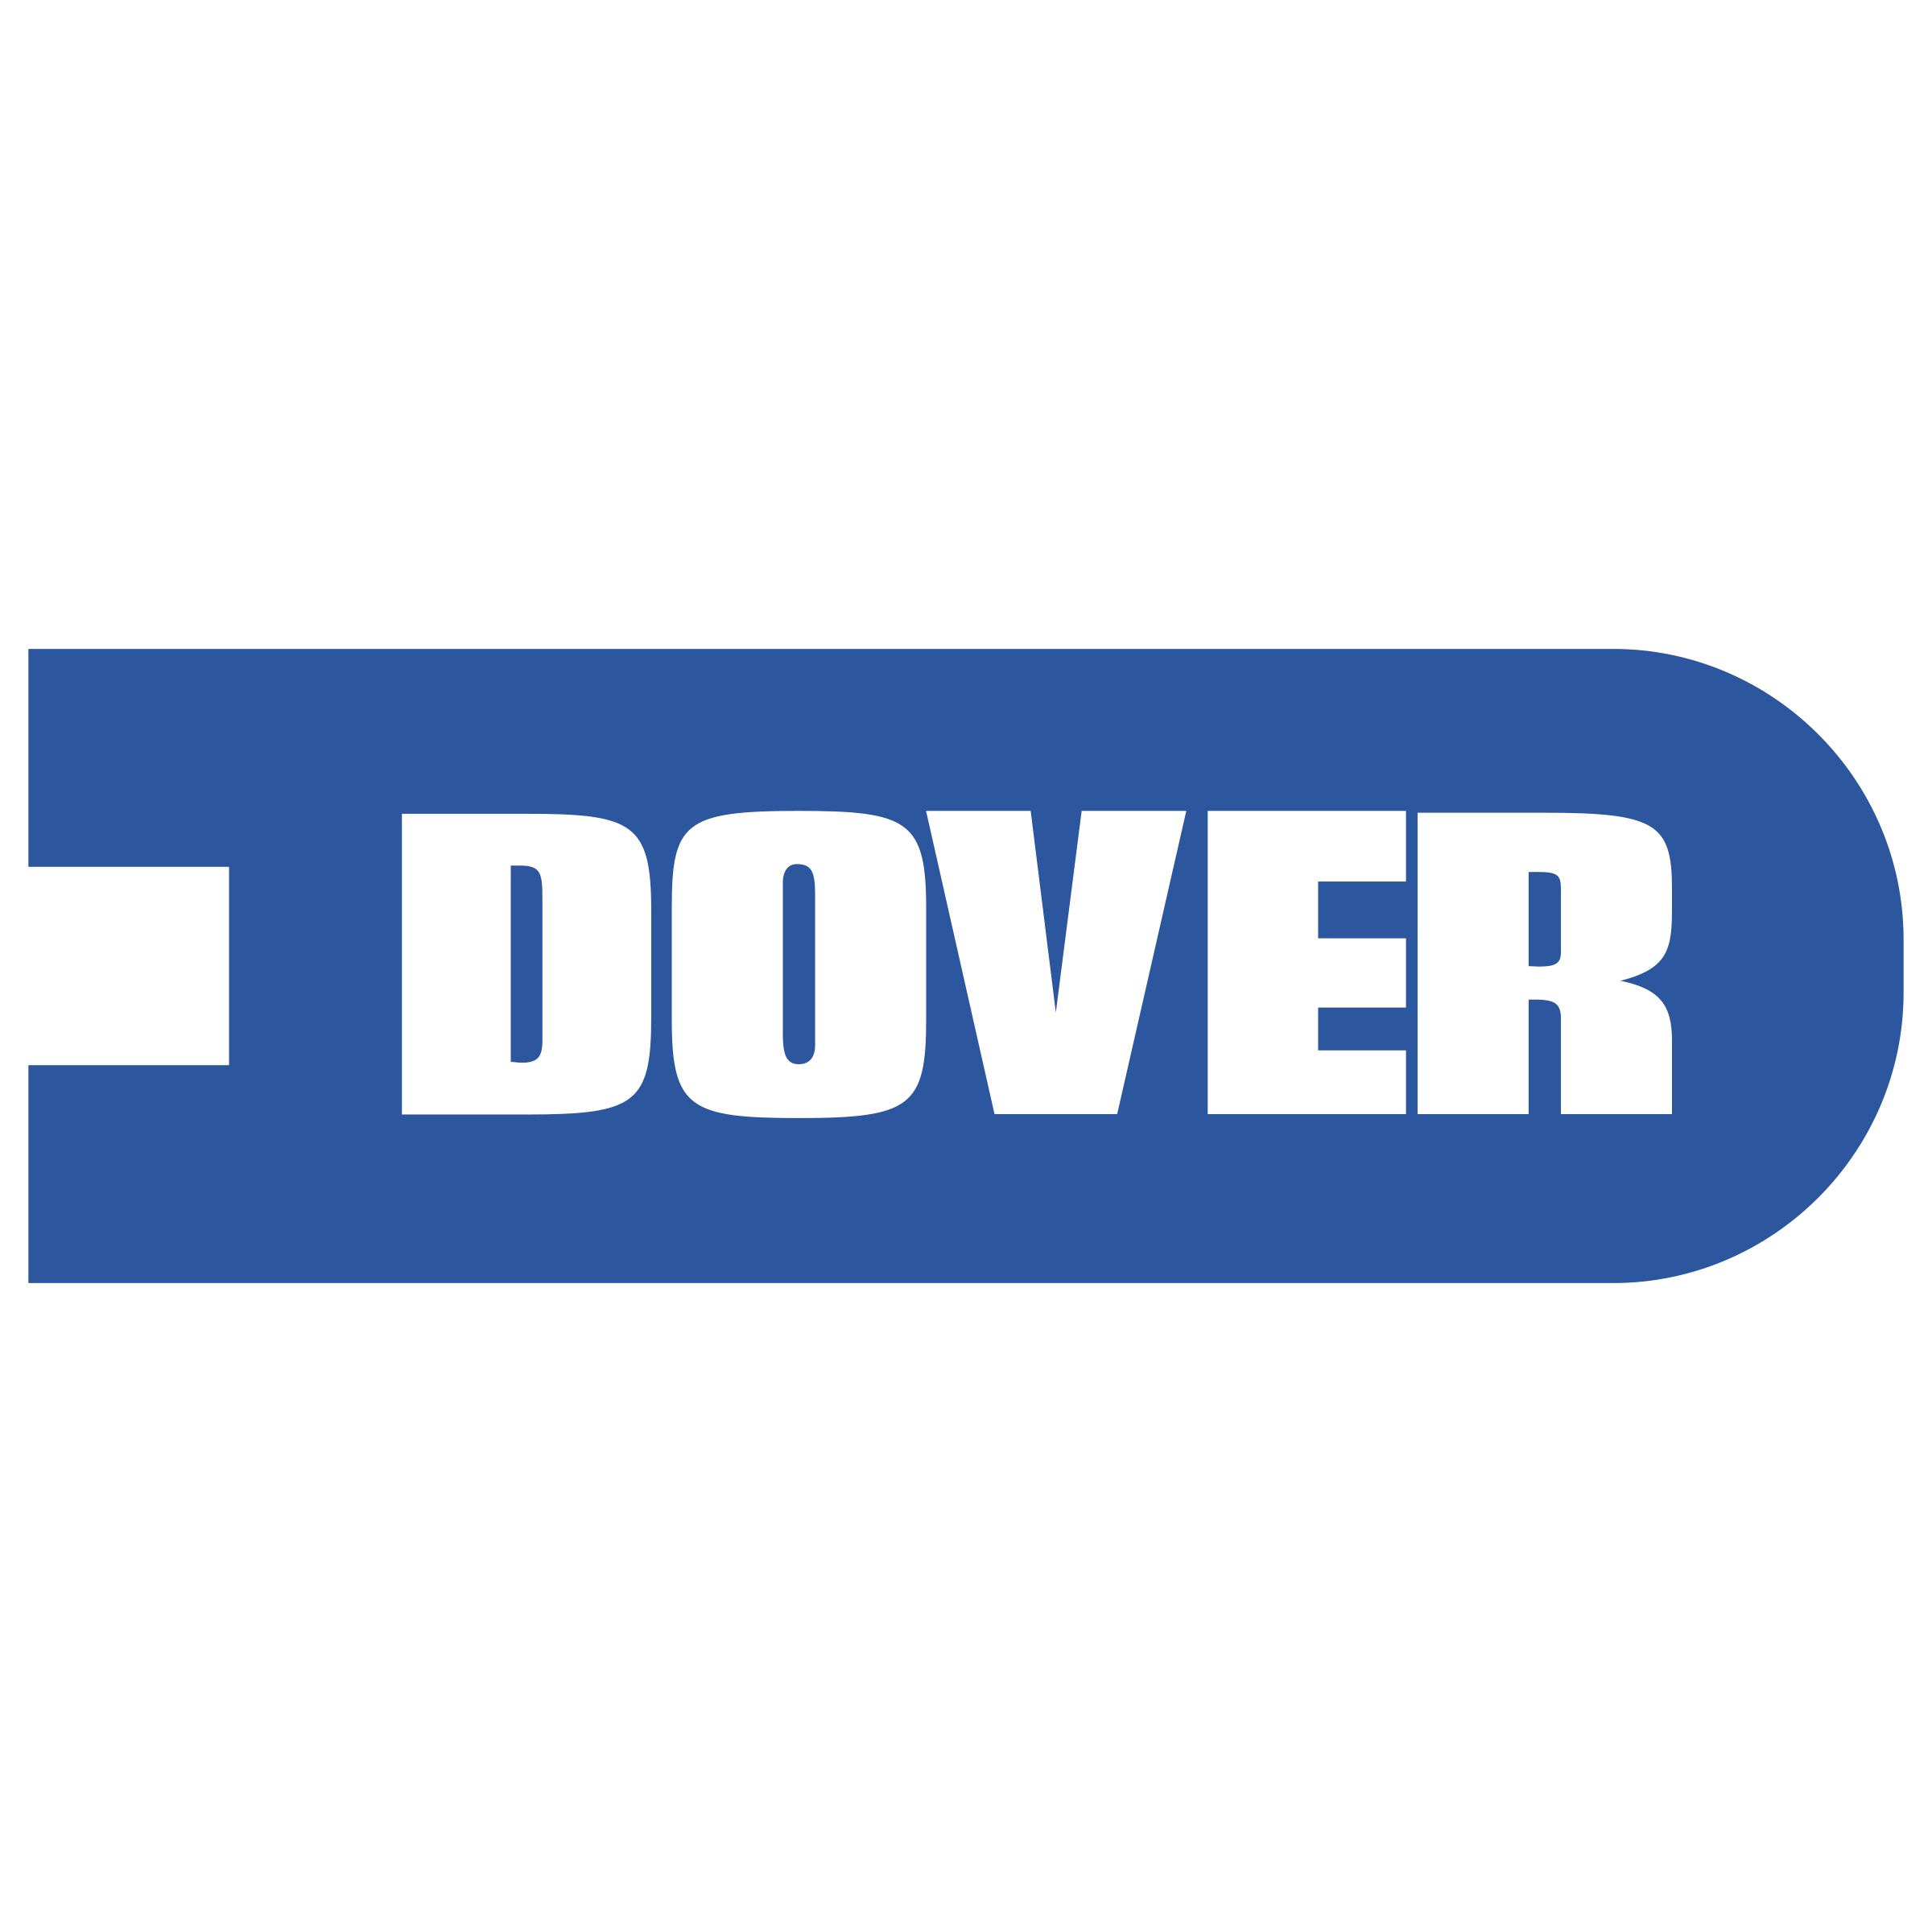 Dover Logo - Dover Logo PNG Transparent & SVG Vector - Freebie Supply